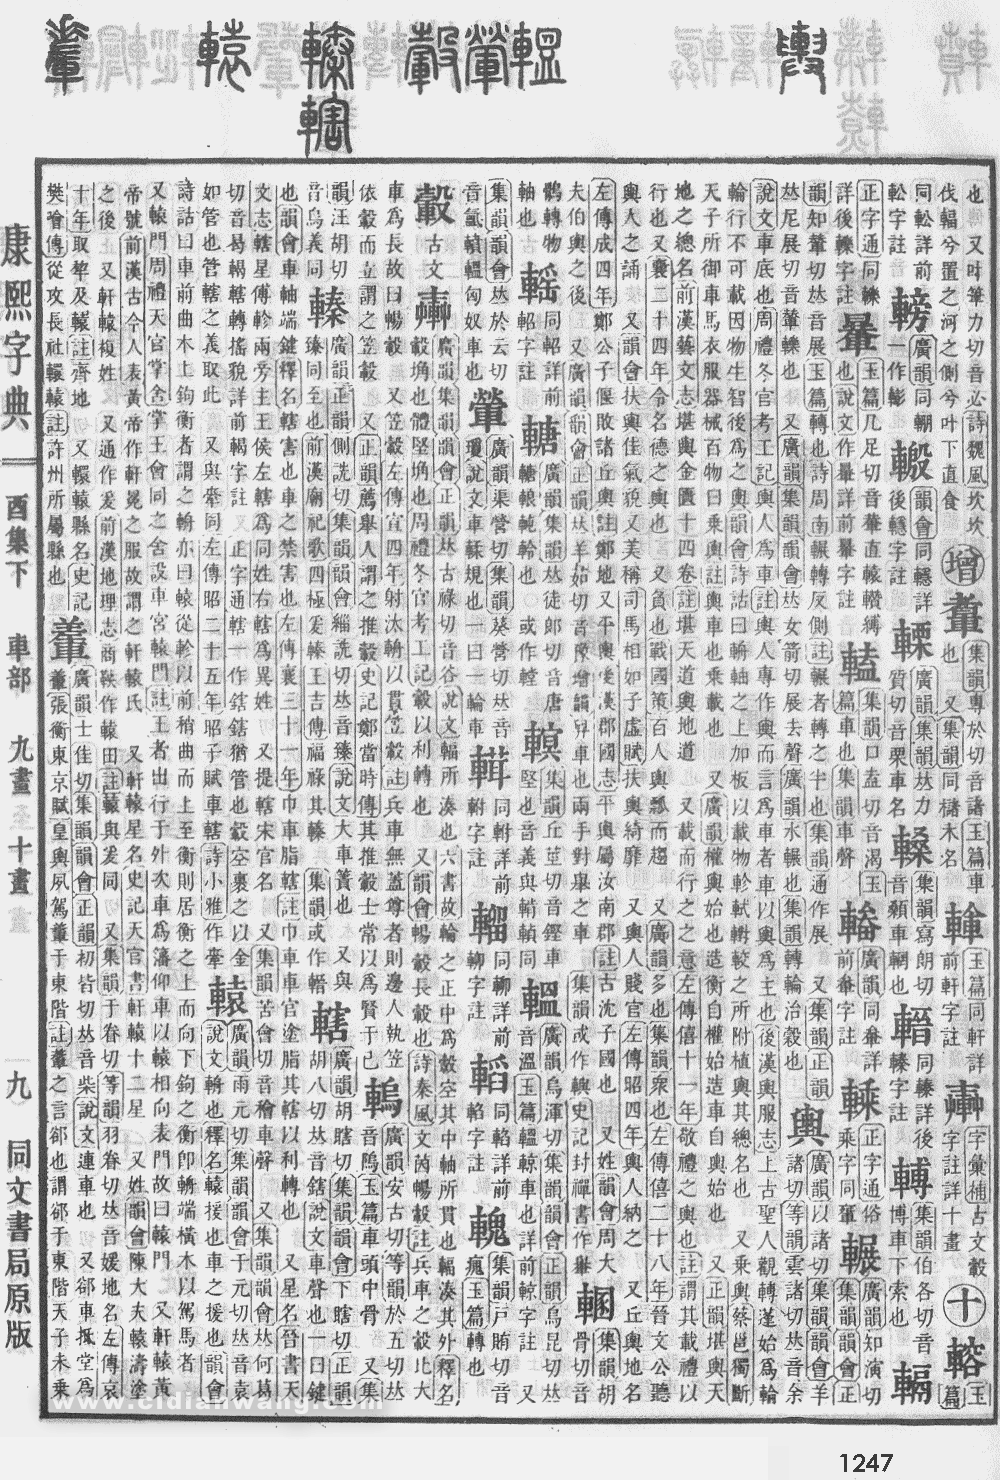 康熙字典掃描版第1247頁